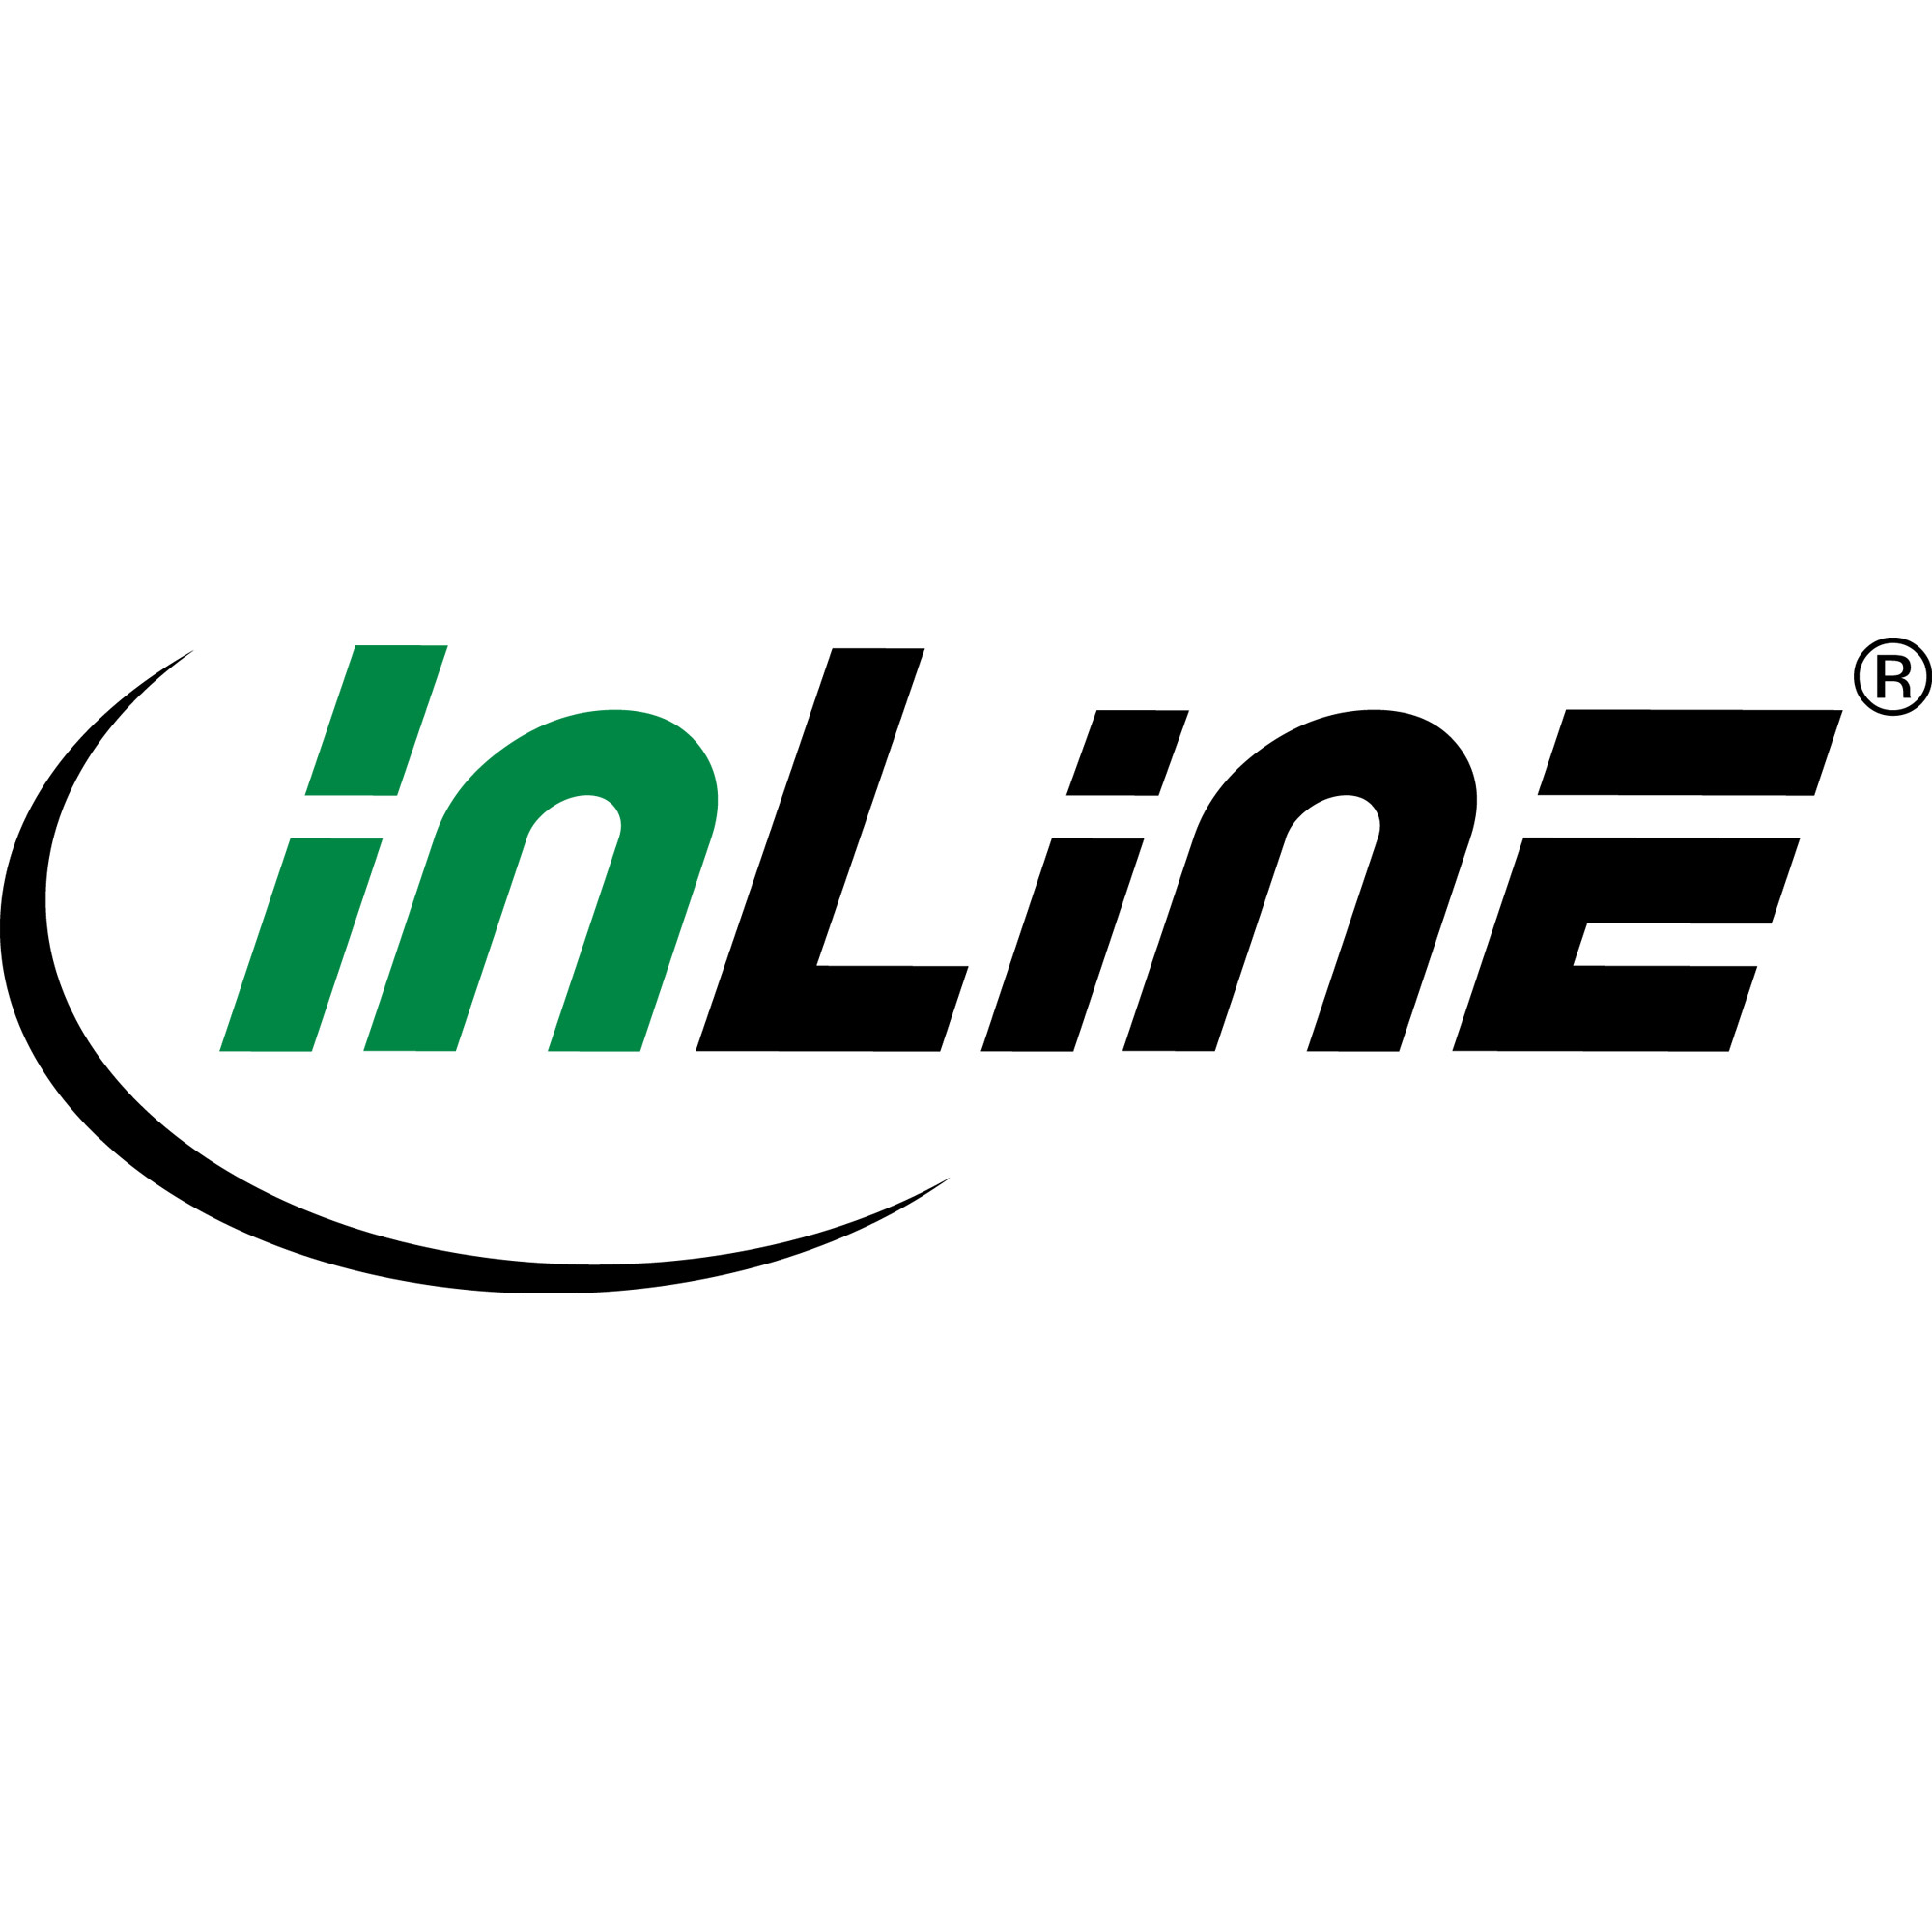 InLine - Patch-Kabel - 2,0m - Schwarz 